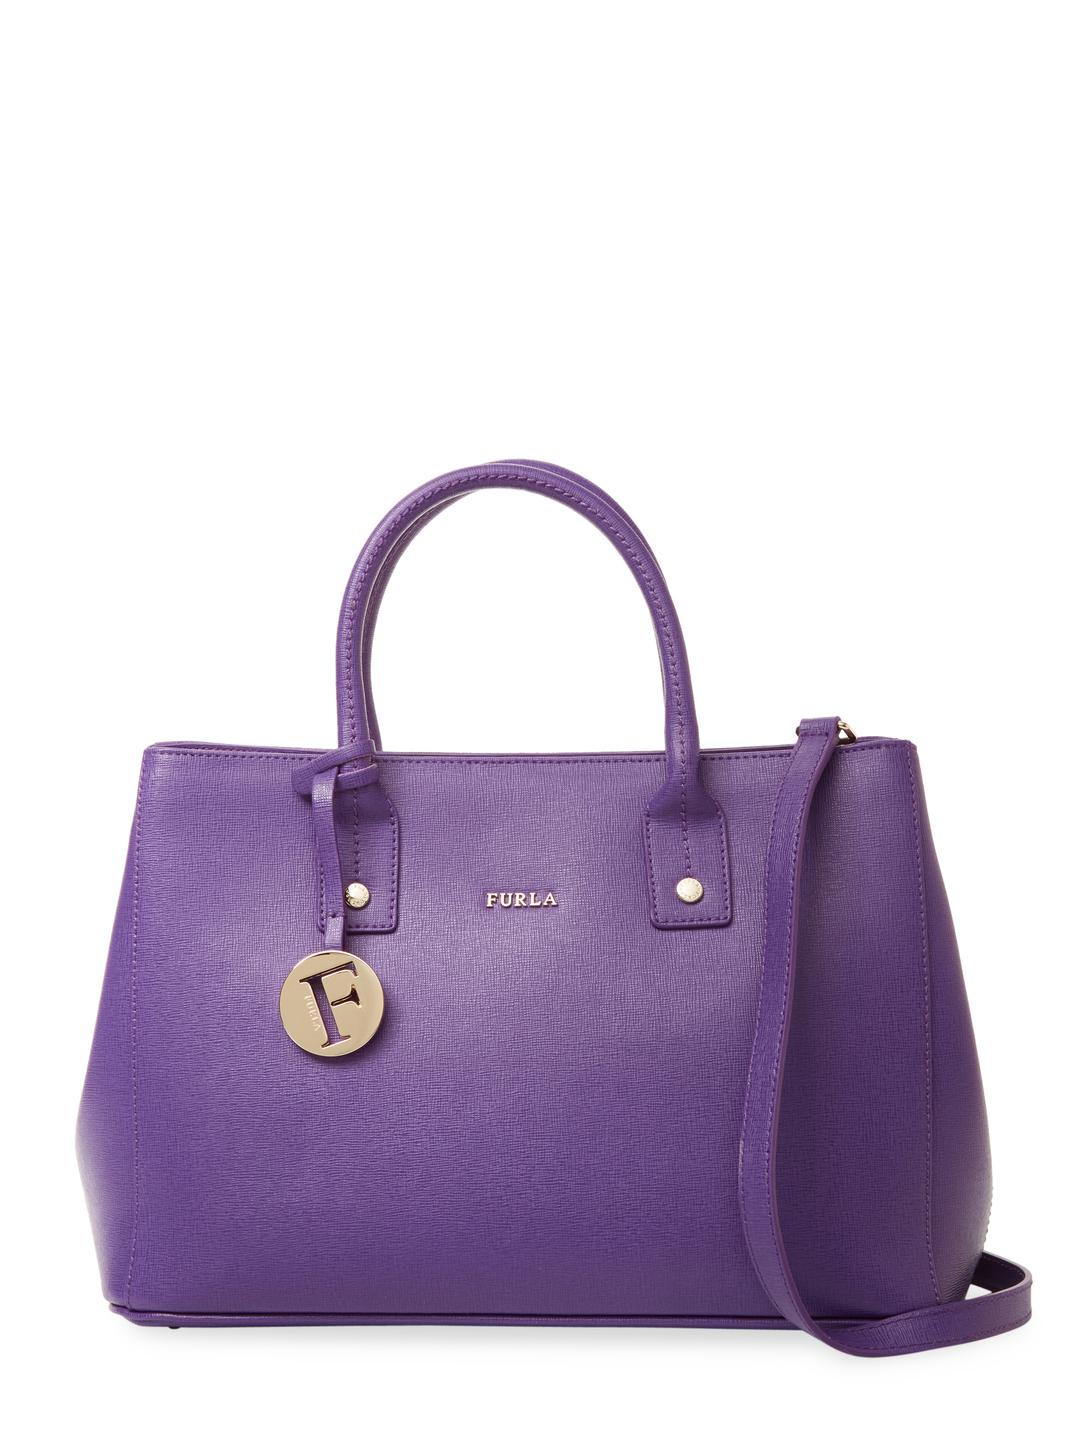 Furla Linda S Tote Bag in Purple | Lyst